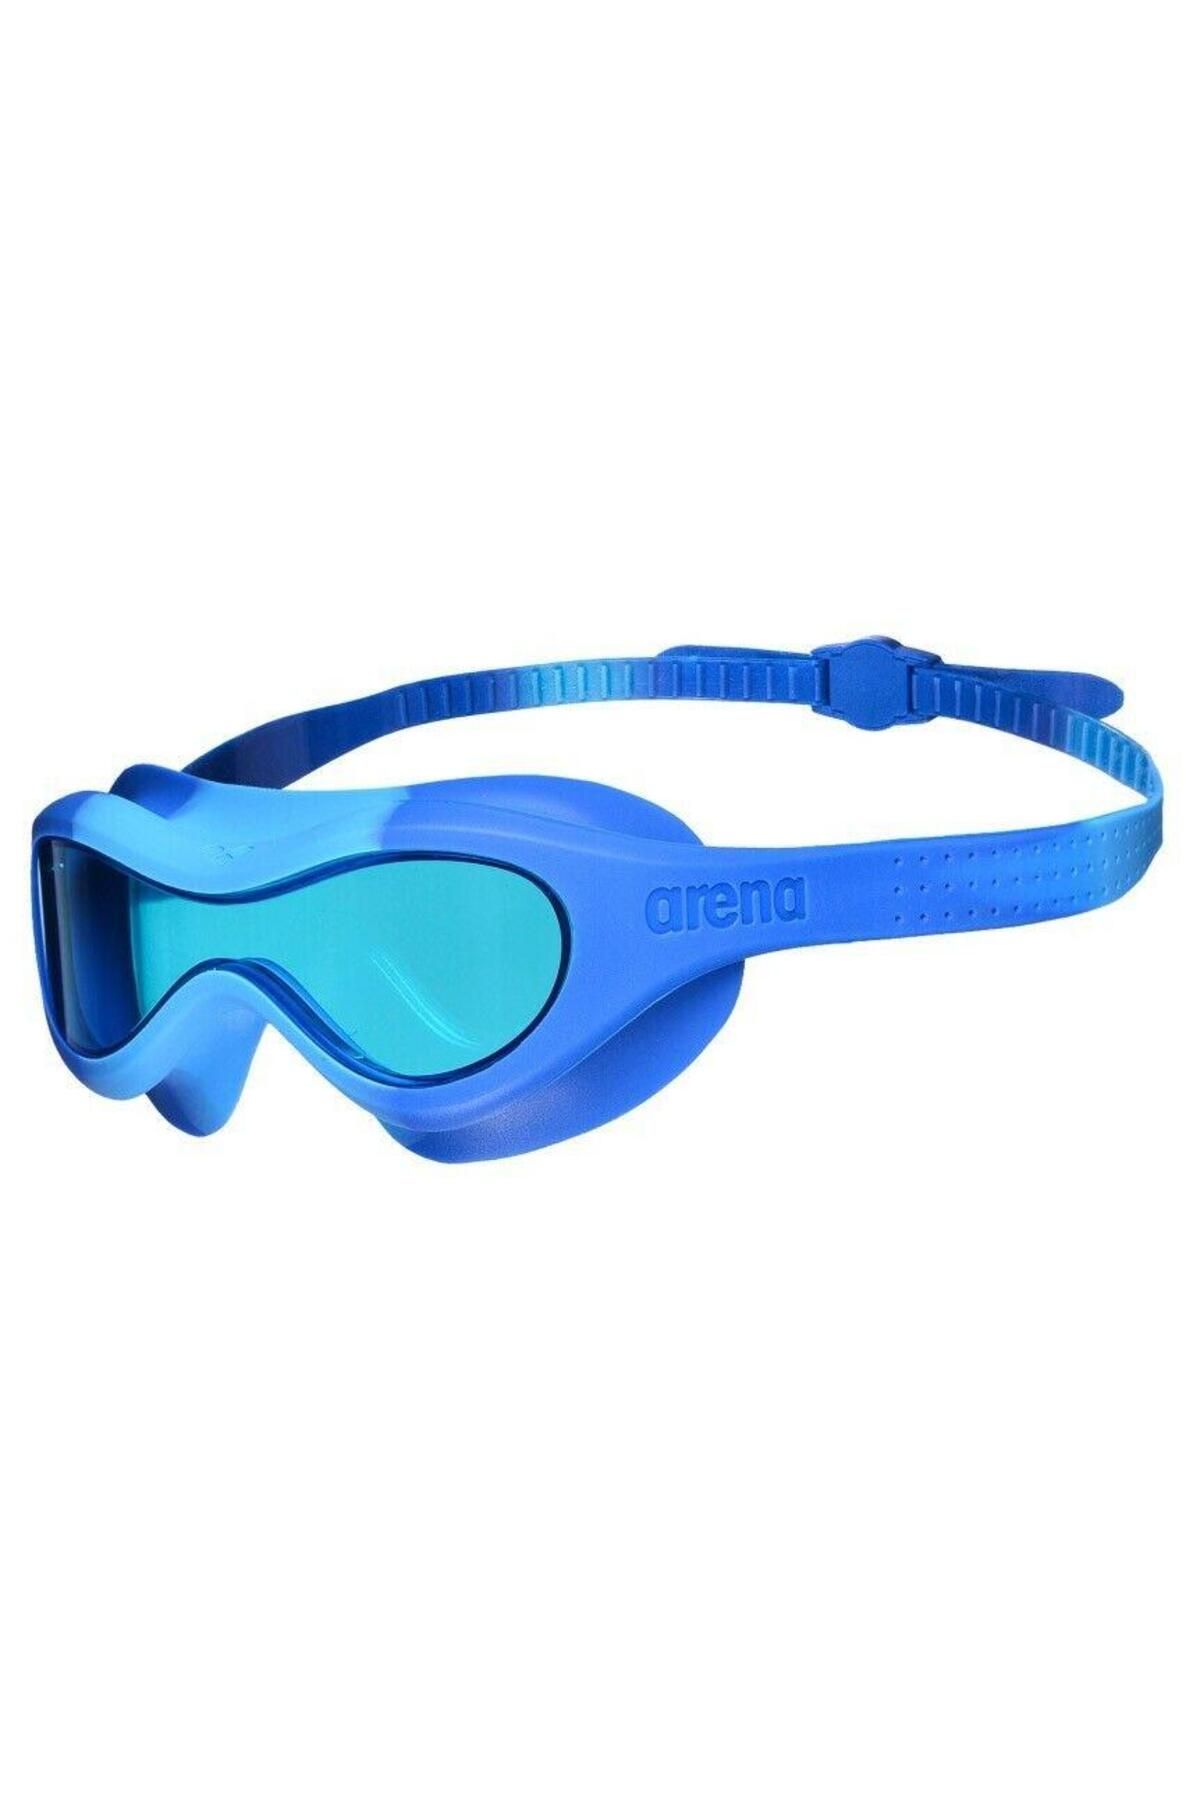 Arena Spider Mask Çocuk Mavi Yüzücü Gözlüğü-ar004287100lb